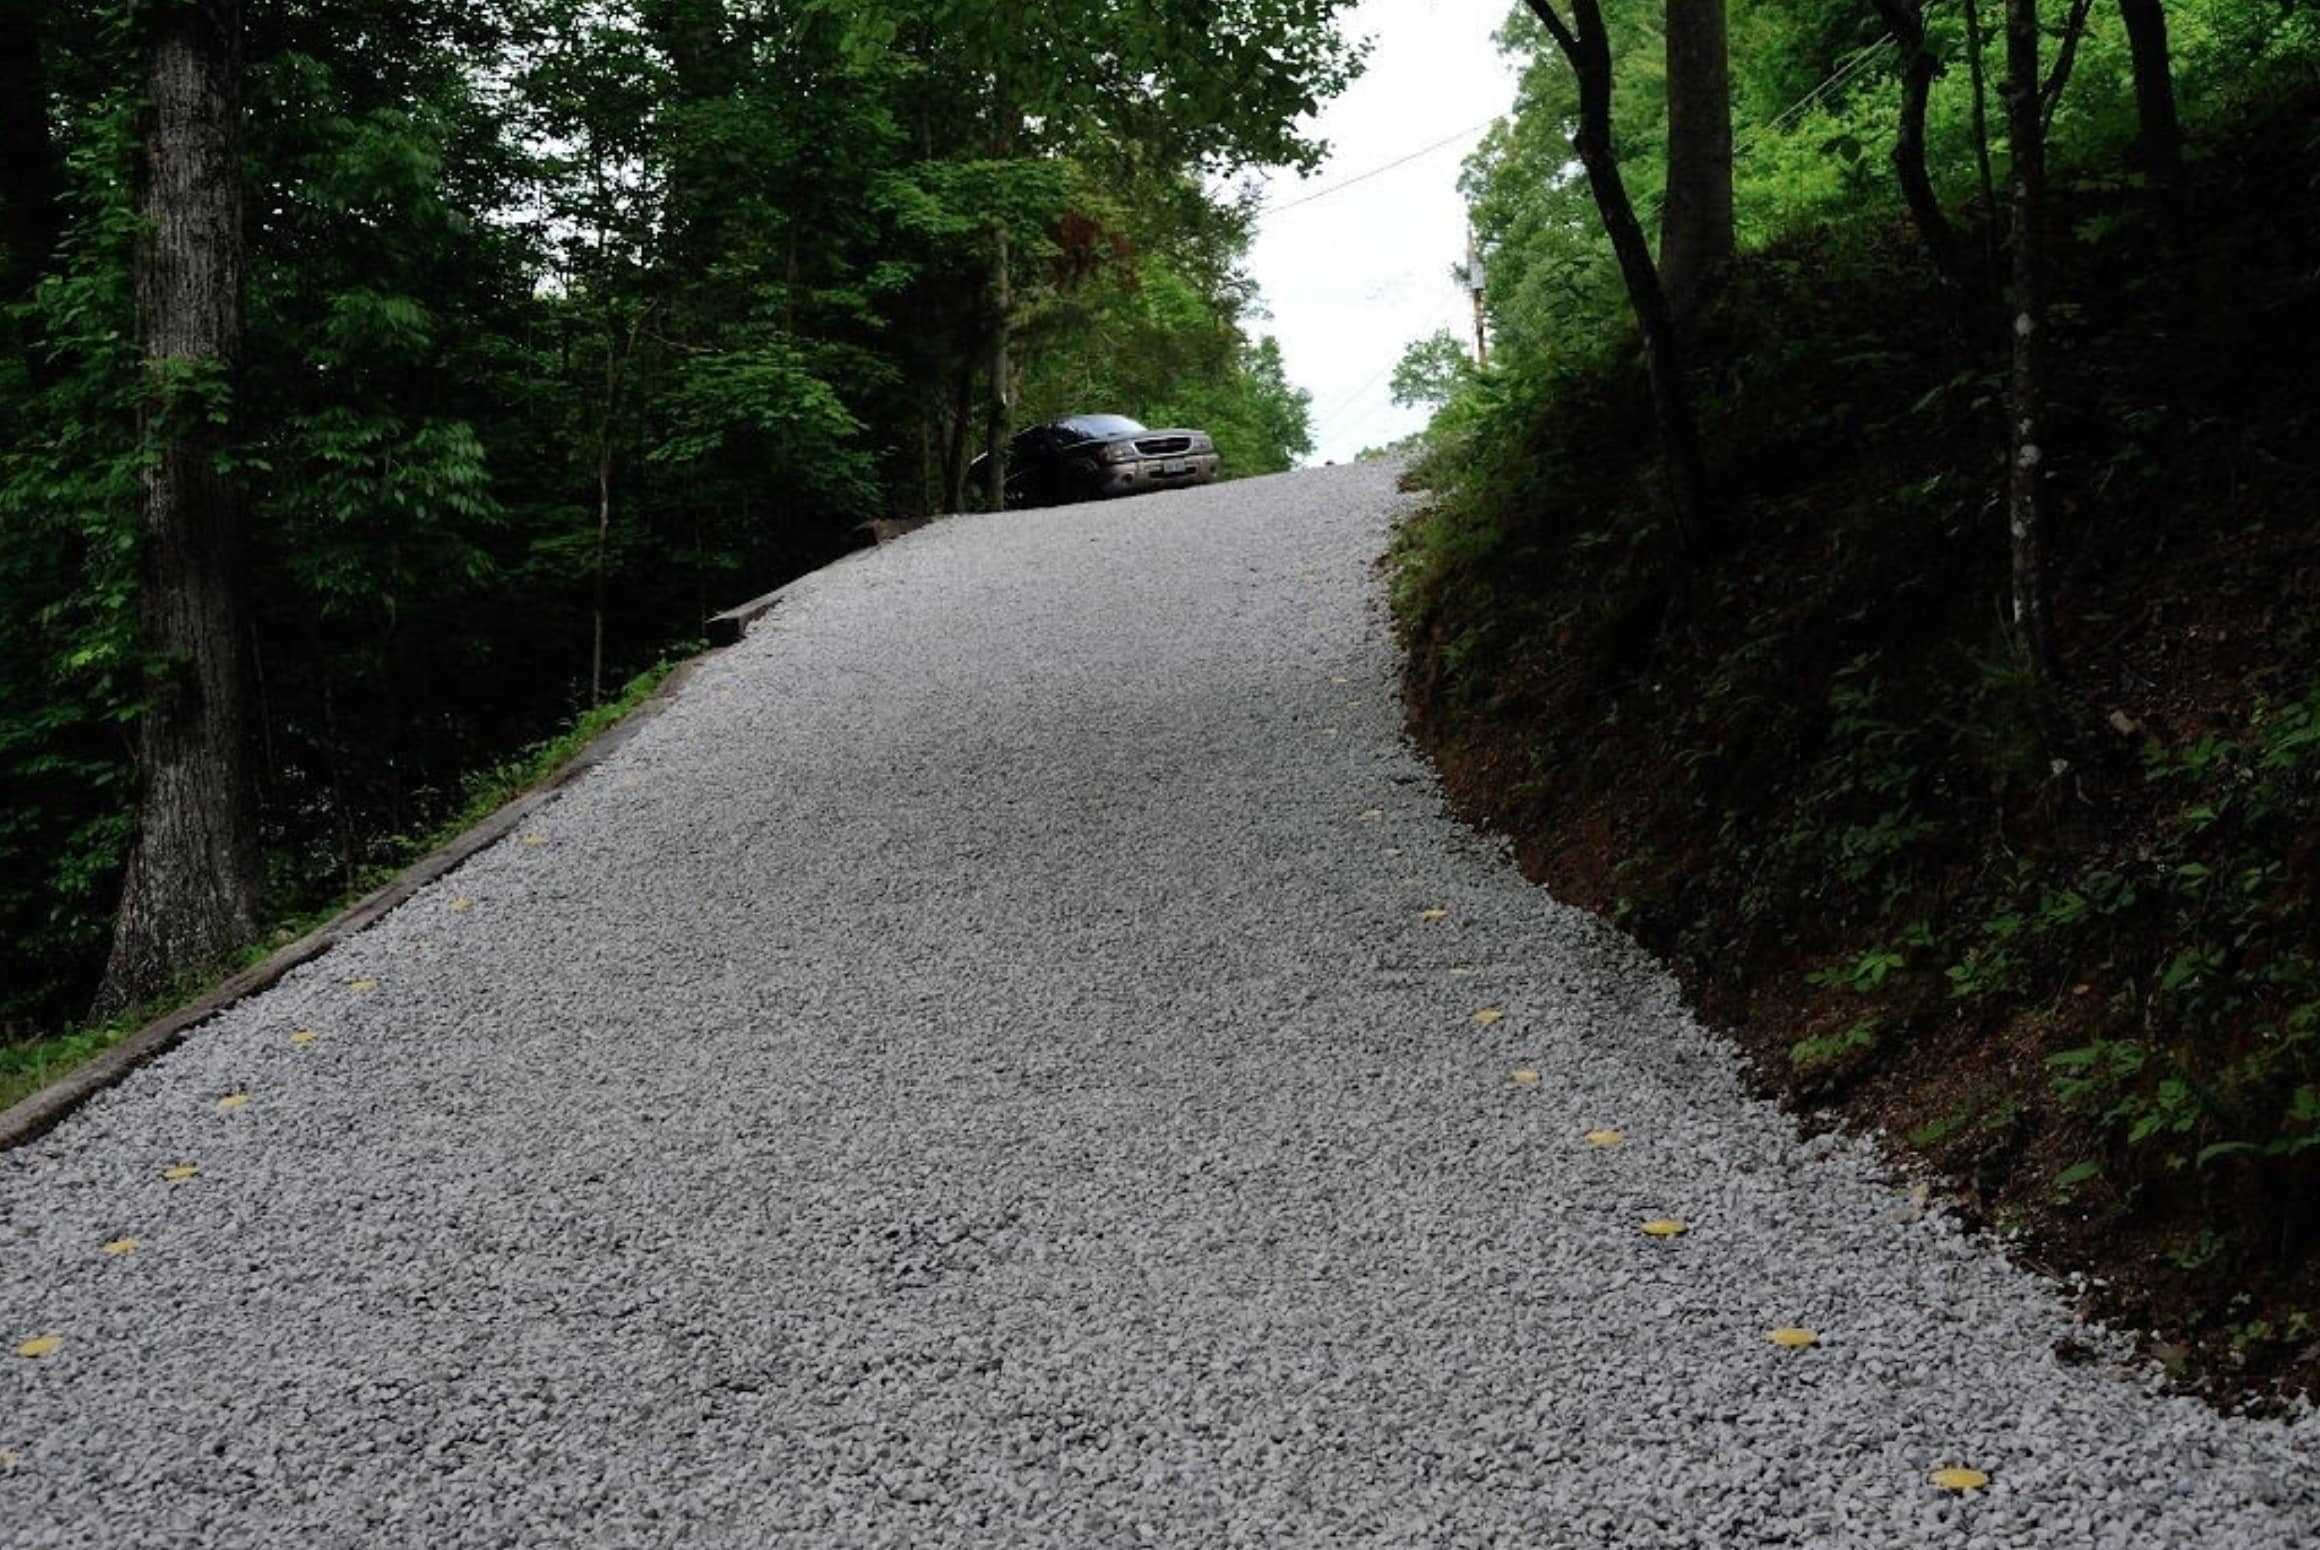 Driveway resurfacing bitumen and chippings gravel drive road asphalt tarmac 